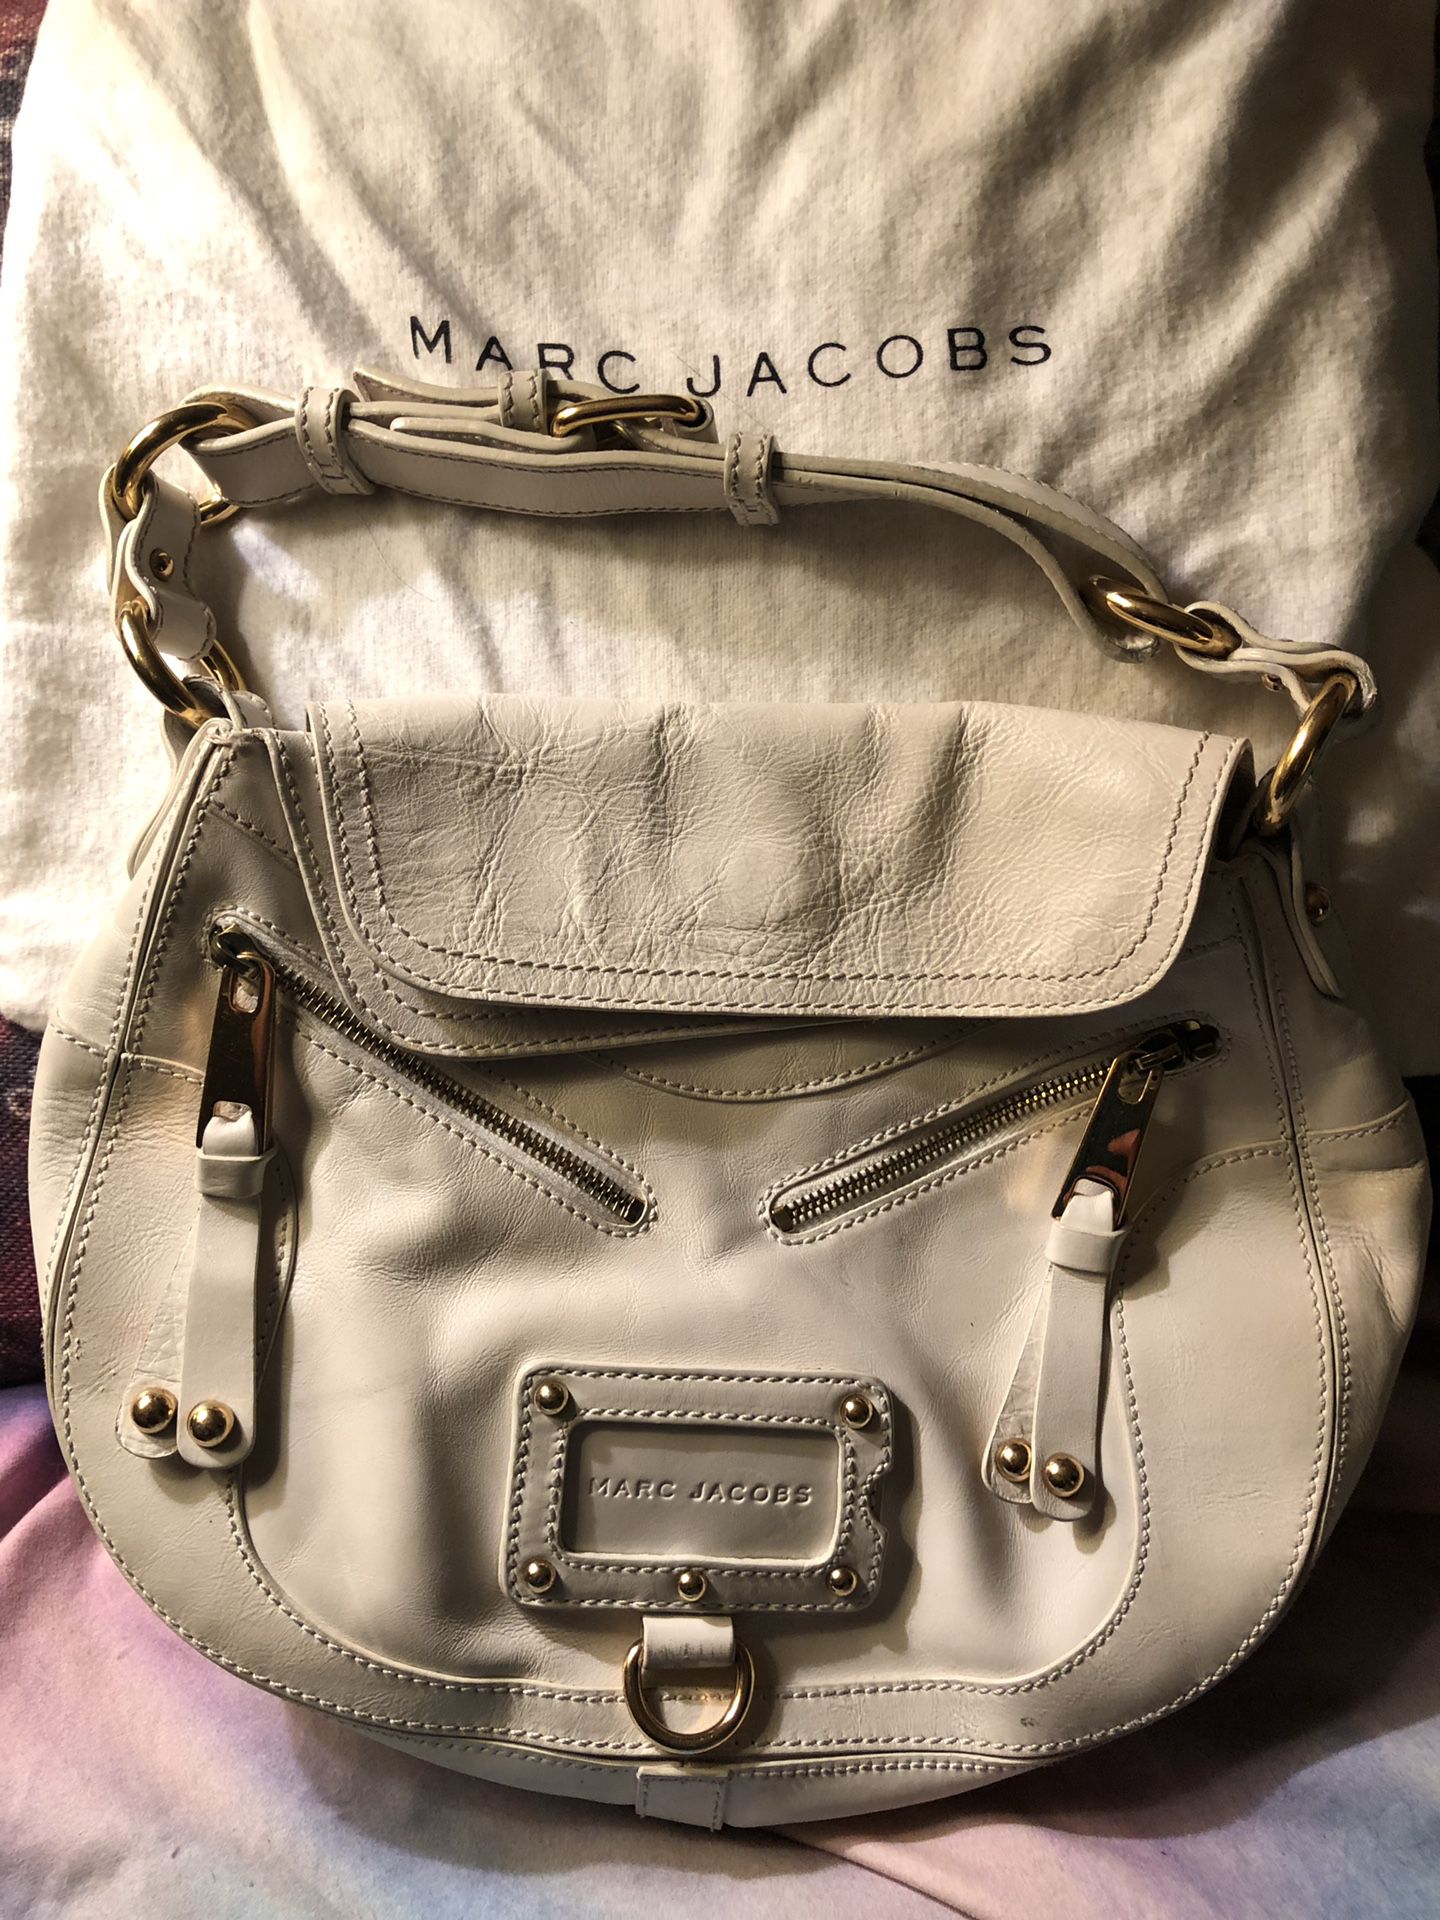 Marc Jacobs Tan Leather Hobo Handbag